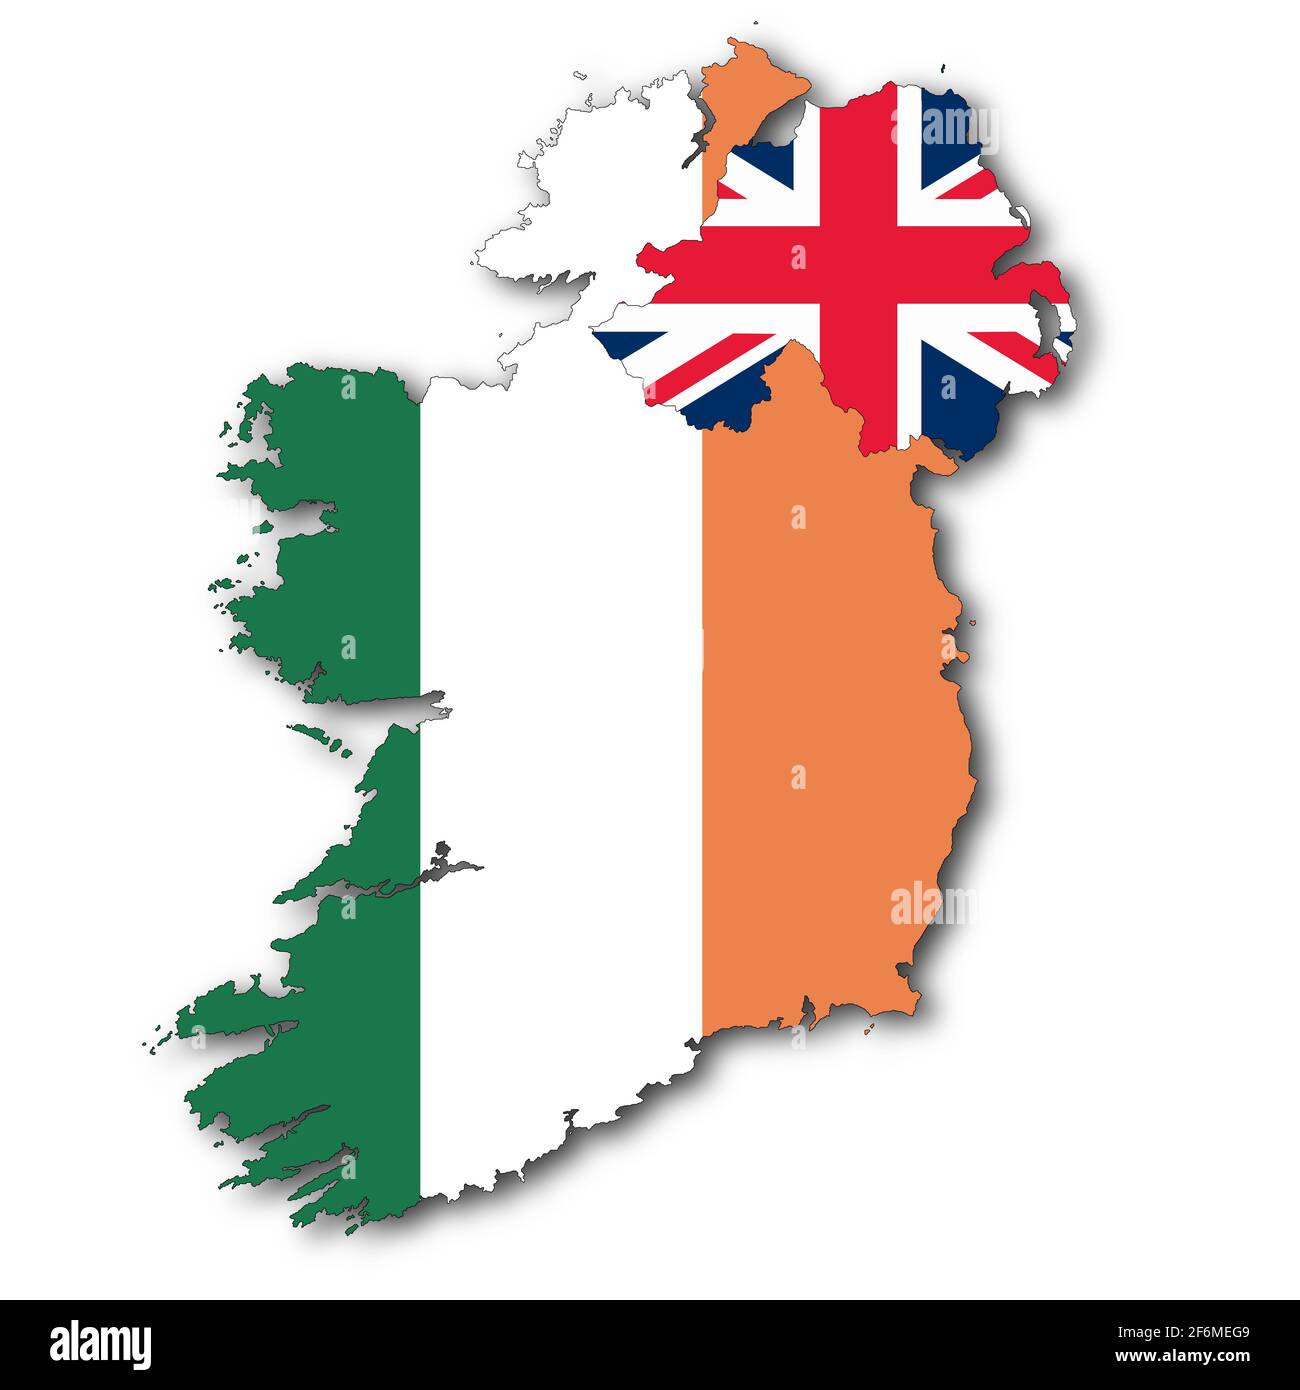 Mappa della Repubblica d'Irlanda e dell'Irlanda del Nord su sfondo bianco con tracciato di ritaglio per rimuovere l'illustrazione 3d ombreggiata Foto Stock